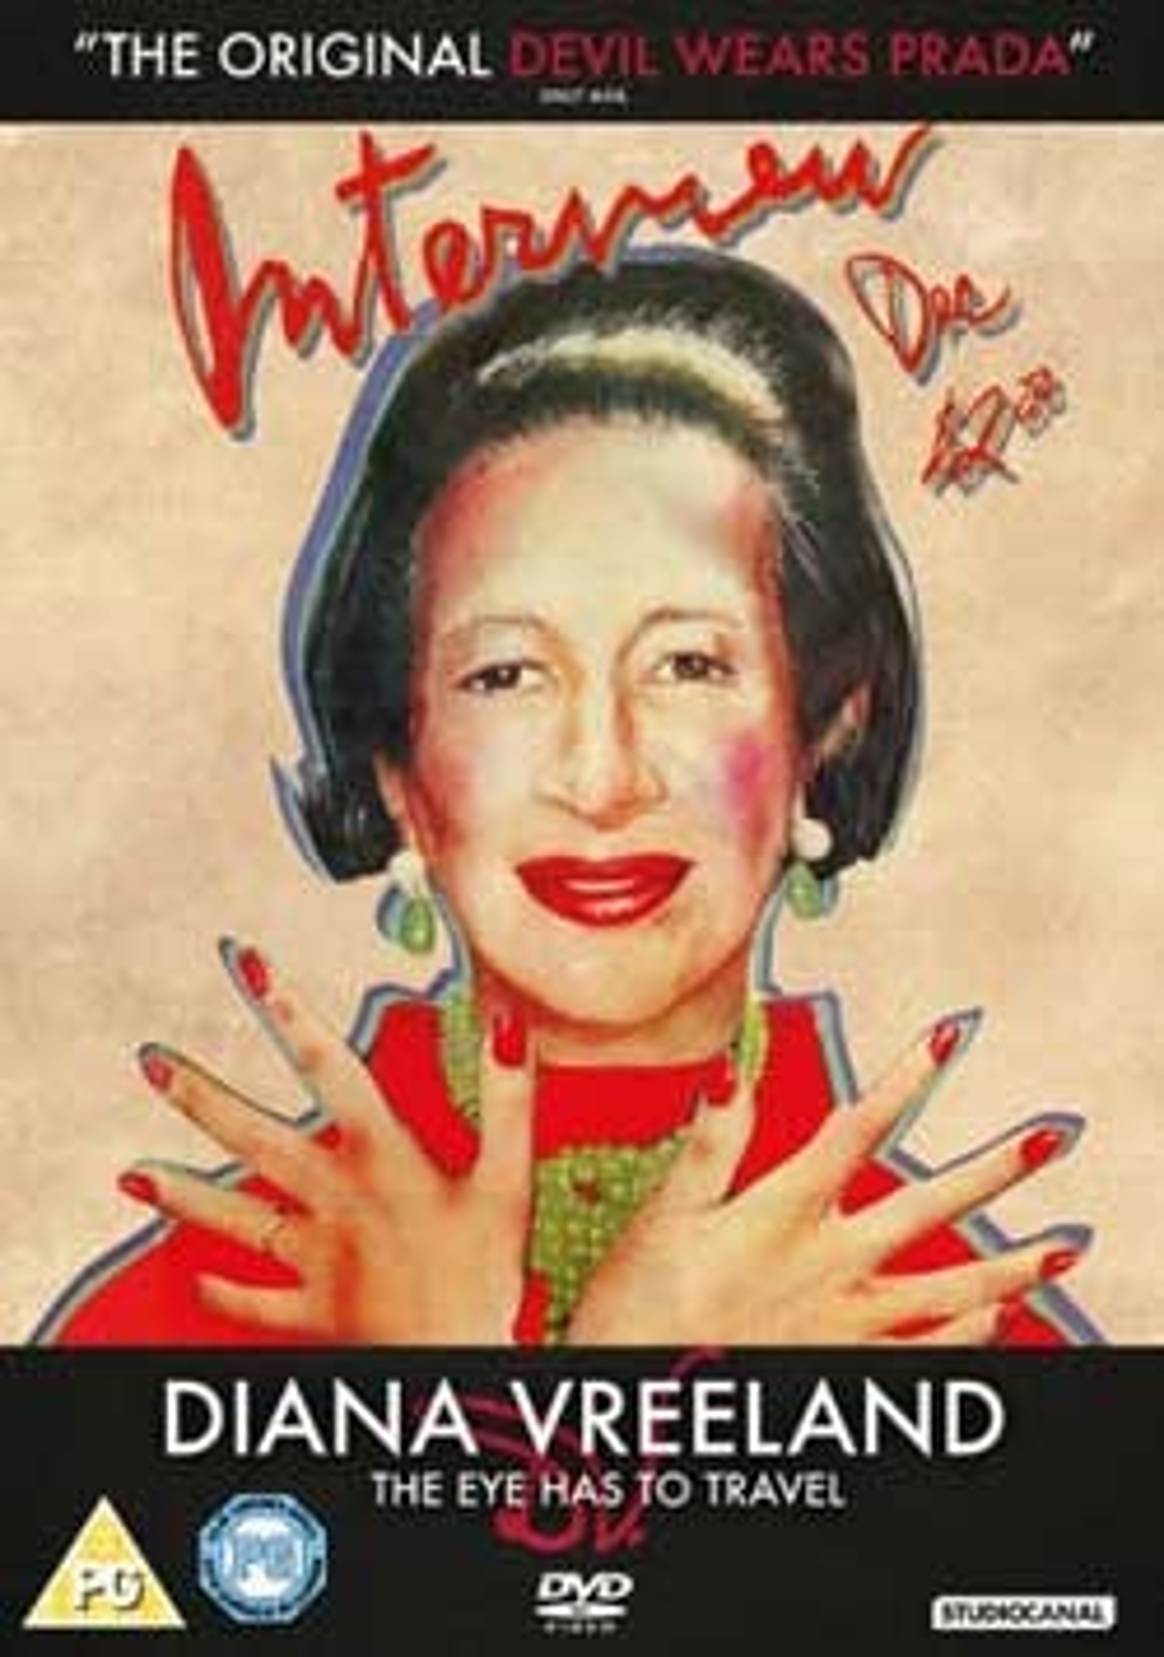 Diana Vreeland documentary wins fashion award